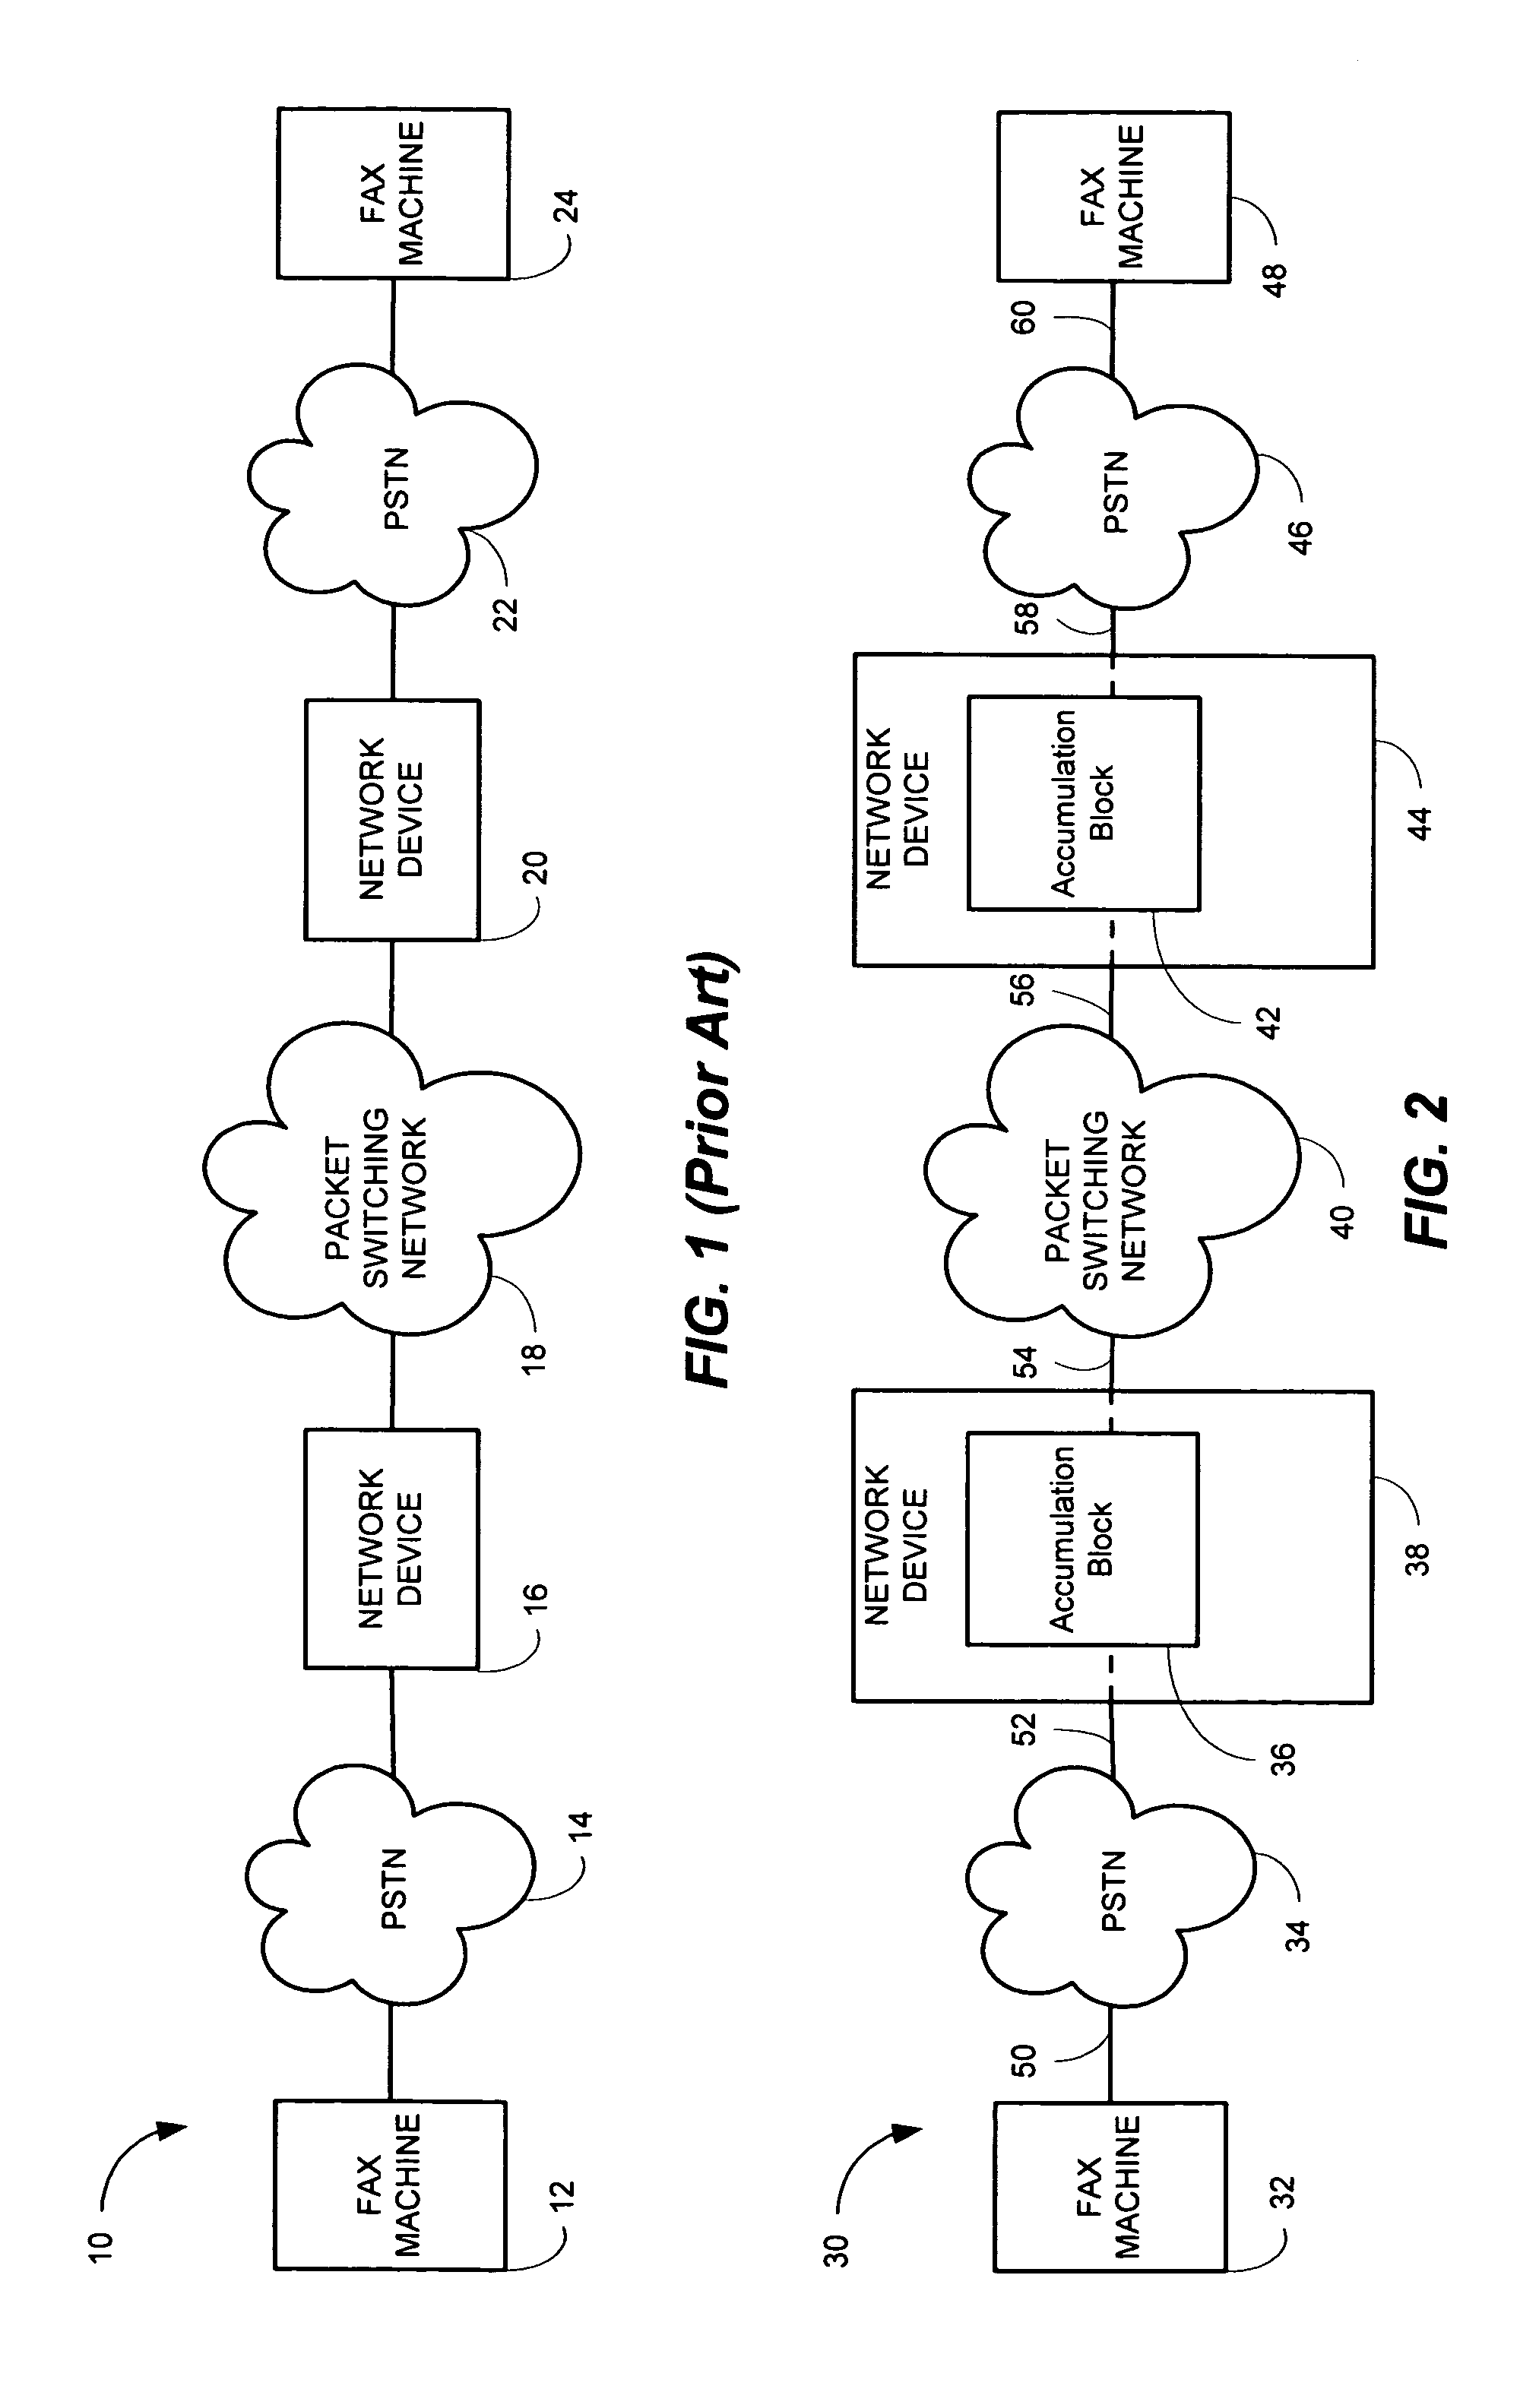 Facsimile (fax) relay handling in error correction mode (ECM)